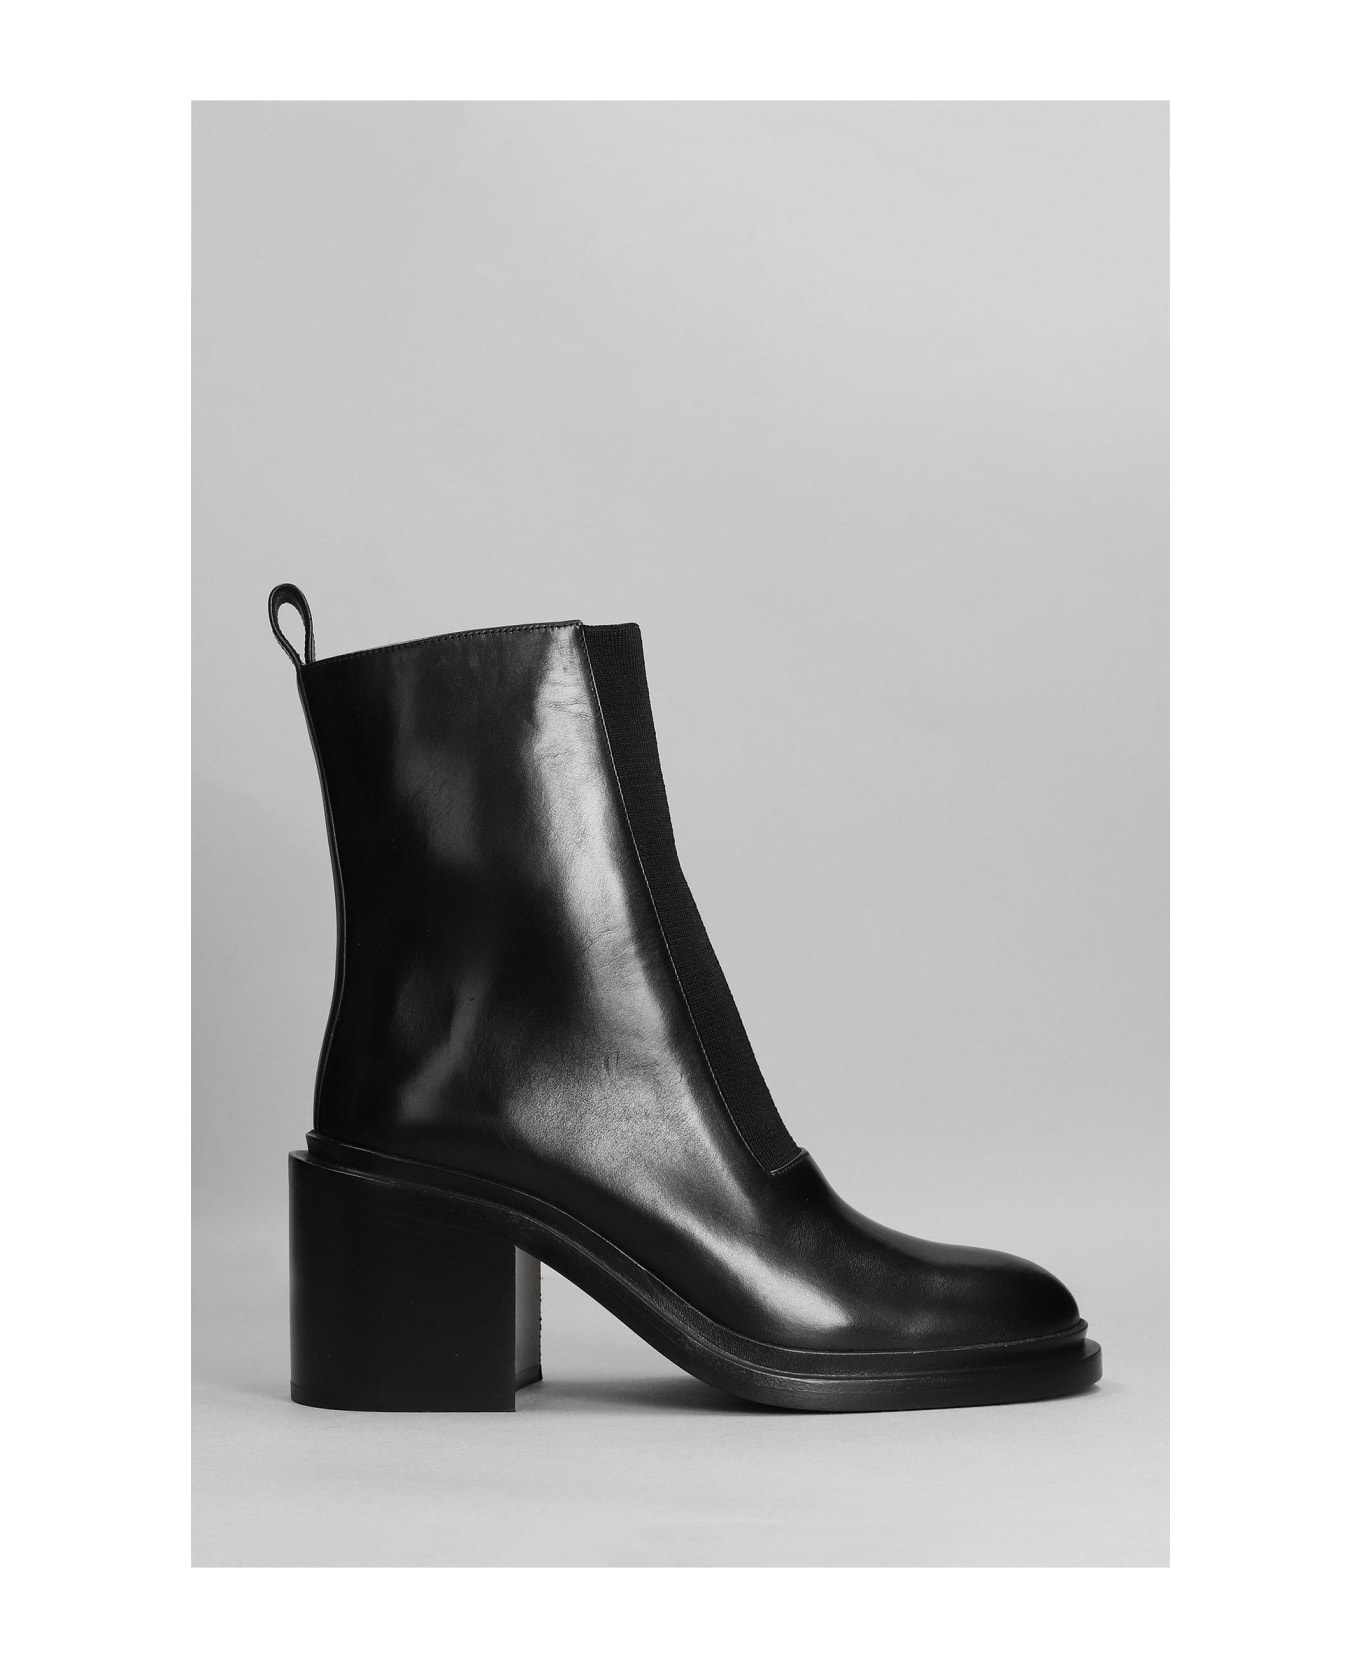 Jil Sander High Heels Ankle Boots In Black Leather - black